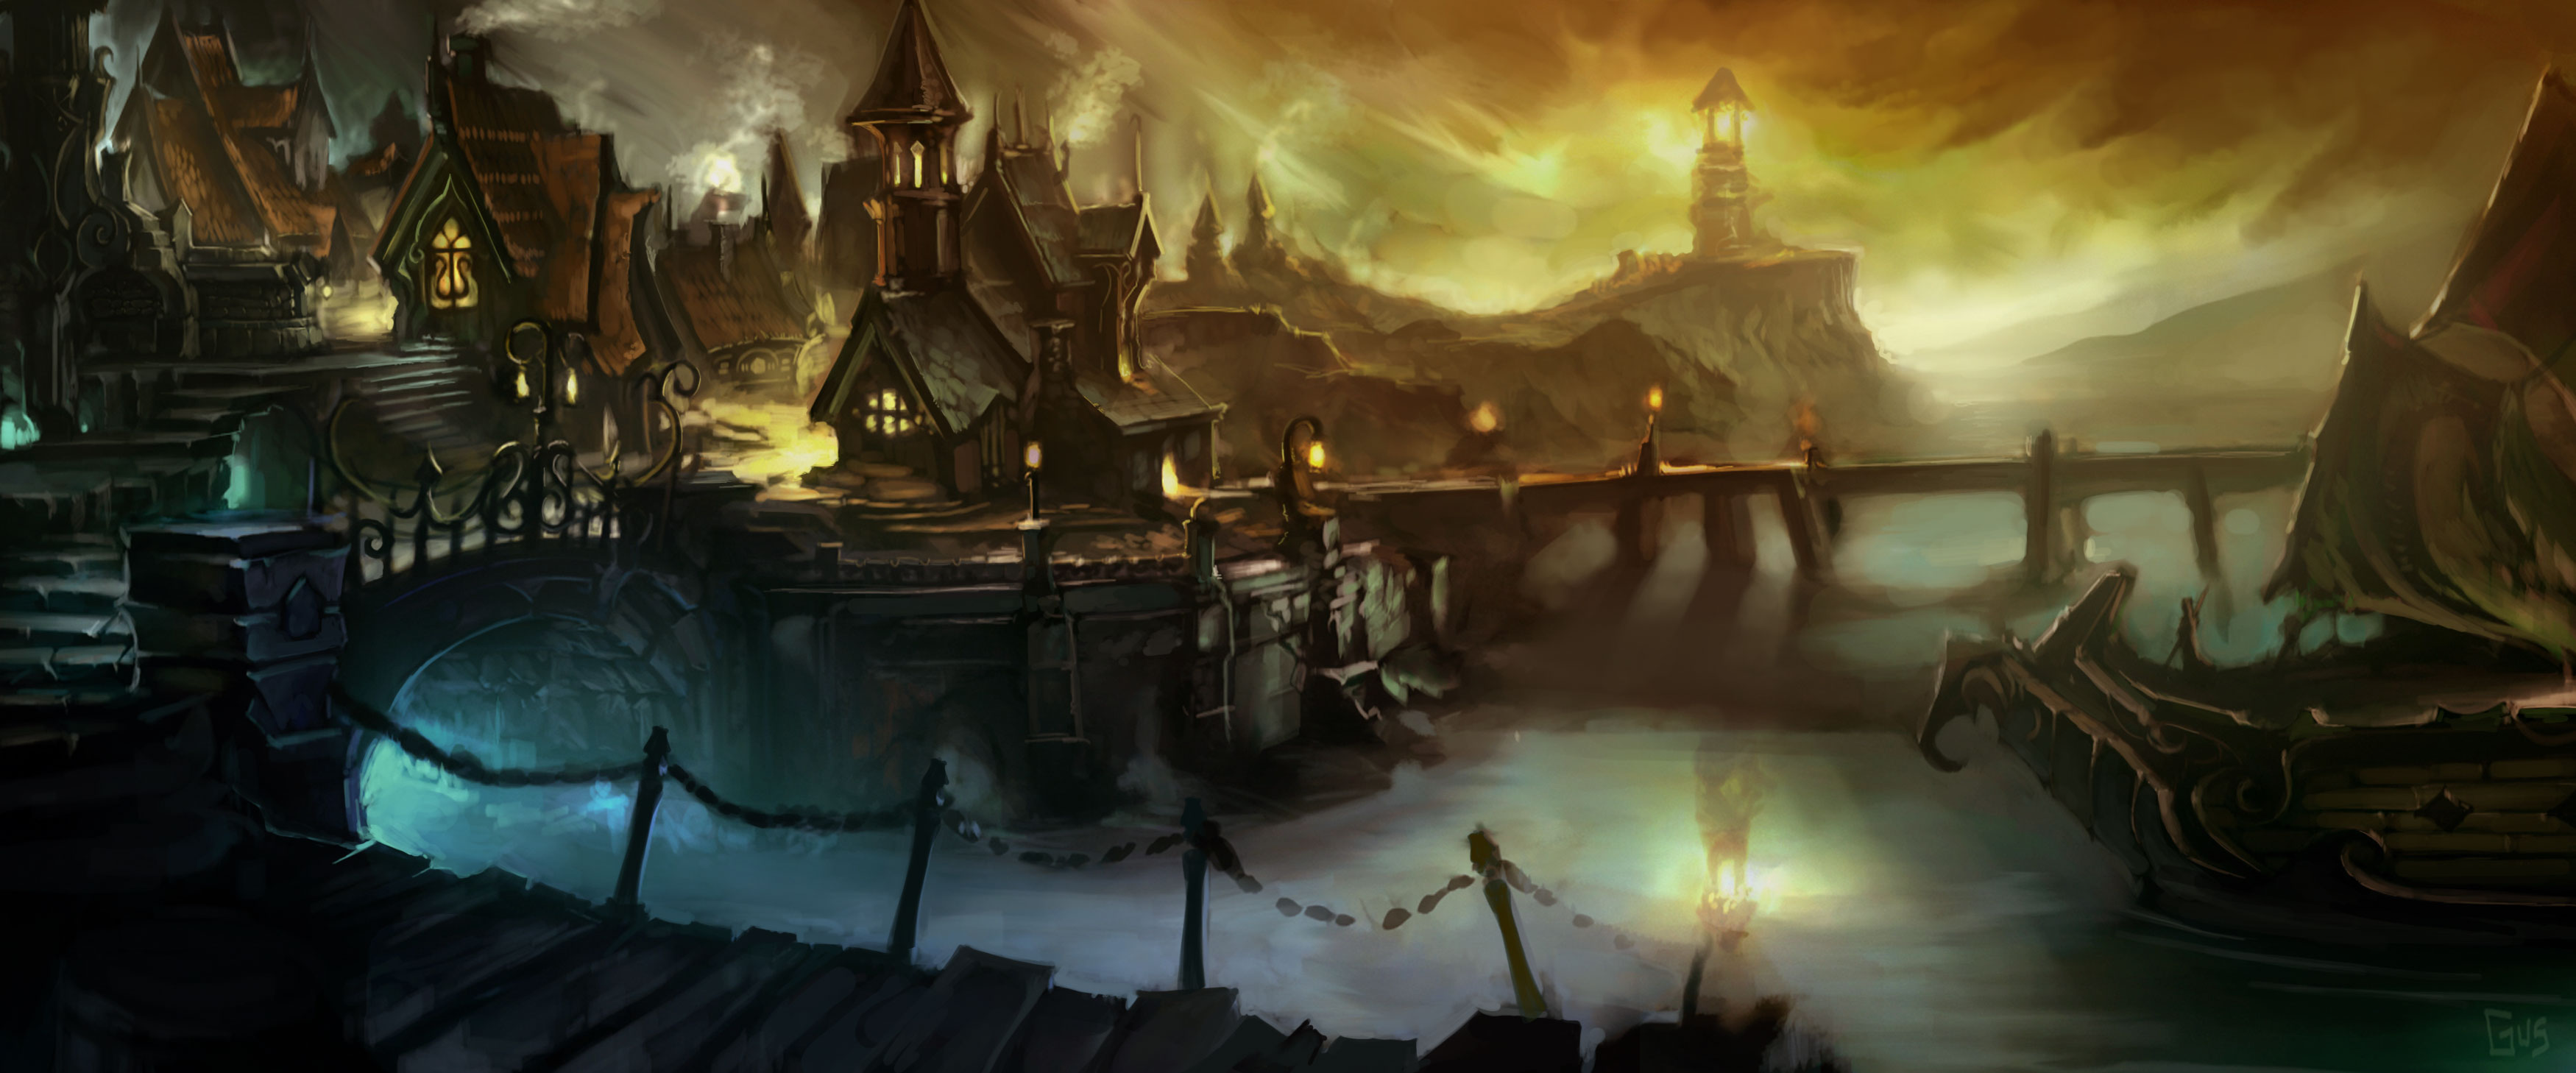 Wallpaper Box World Of Warcraft Cataclysm Hi Res